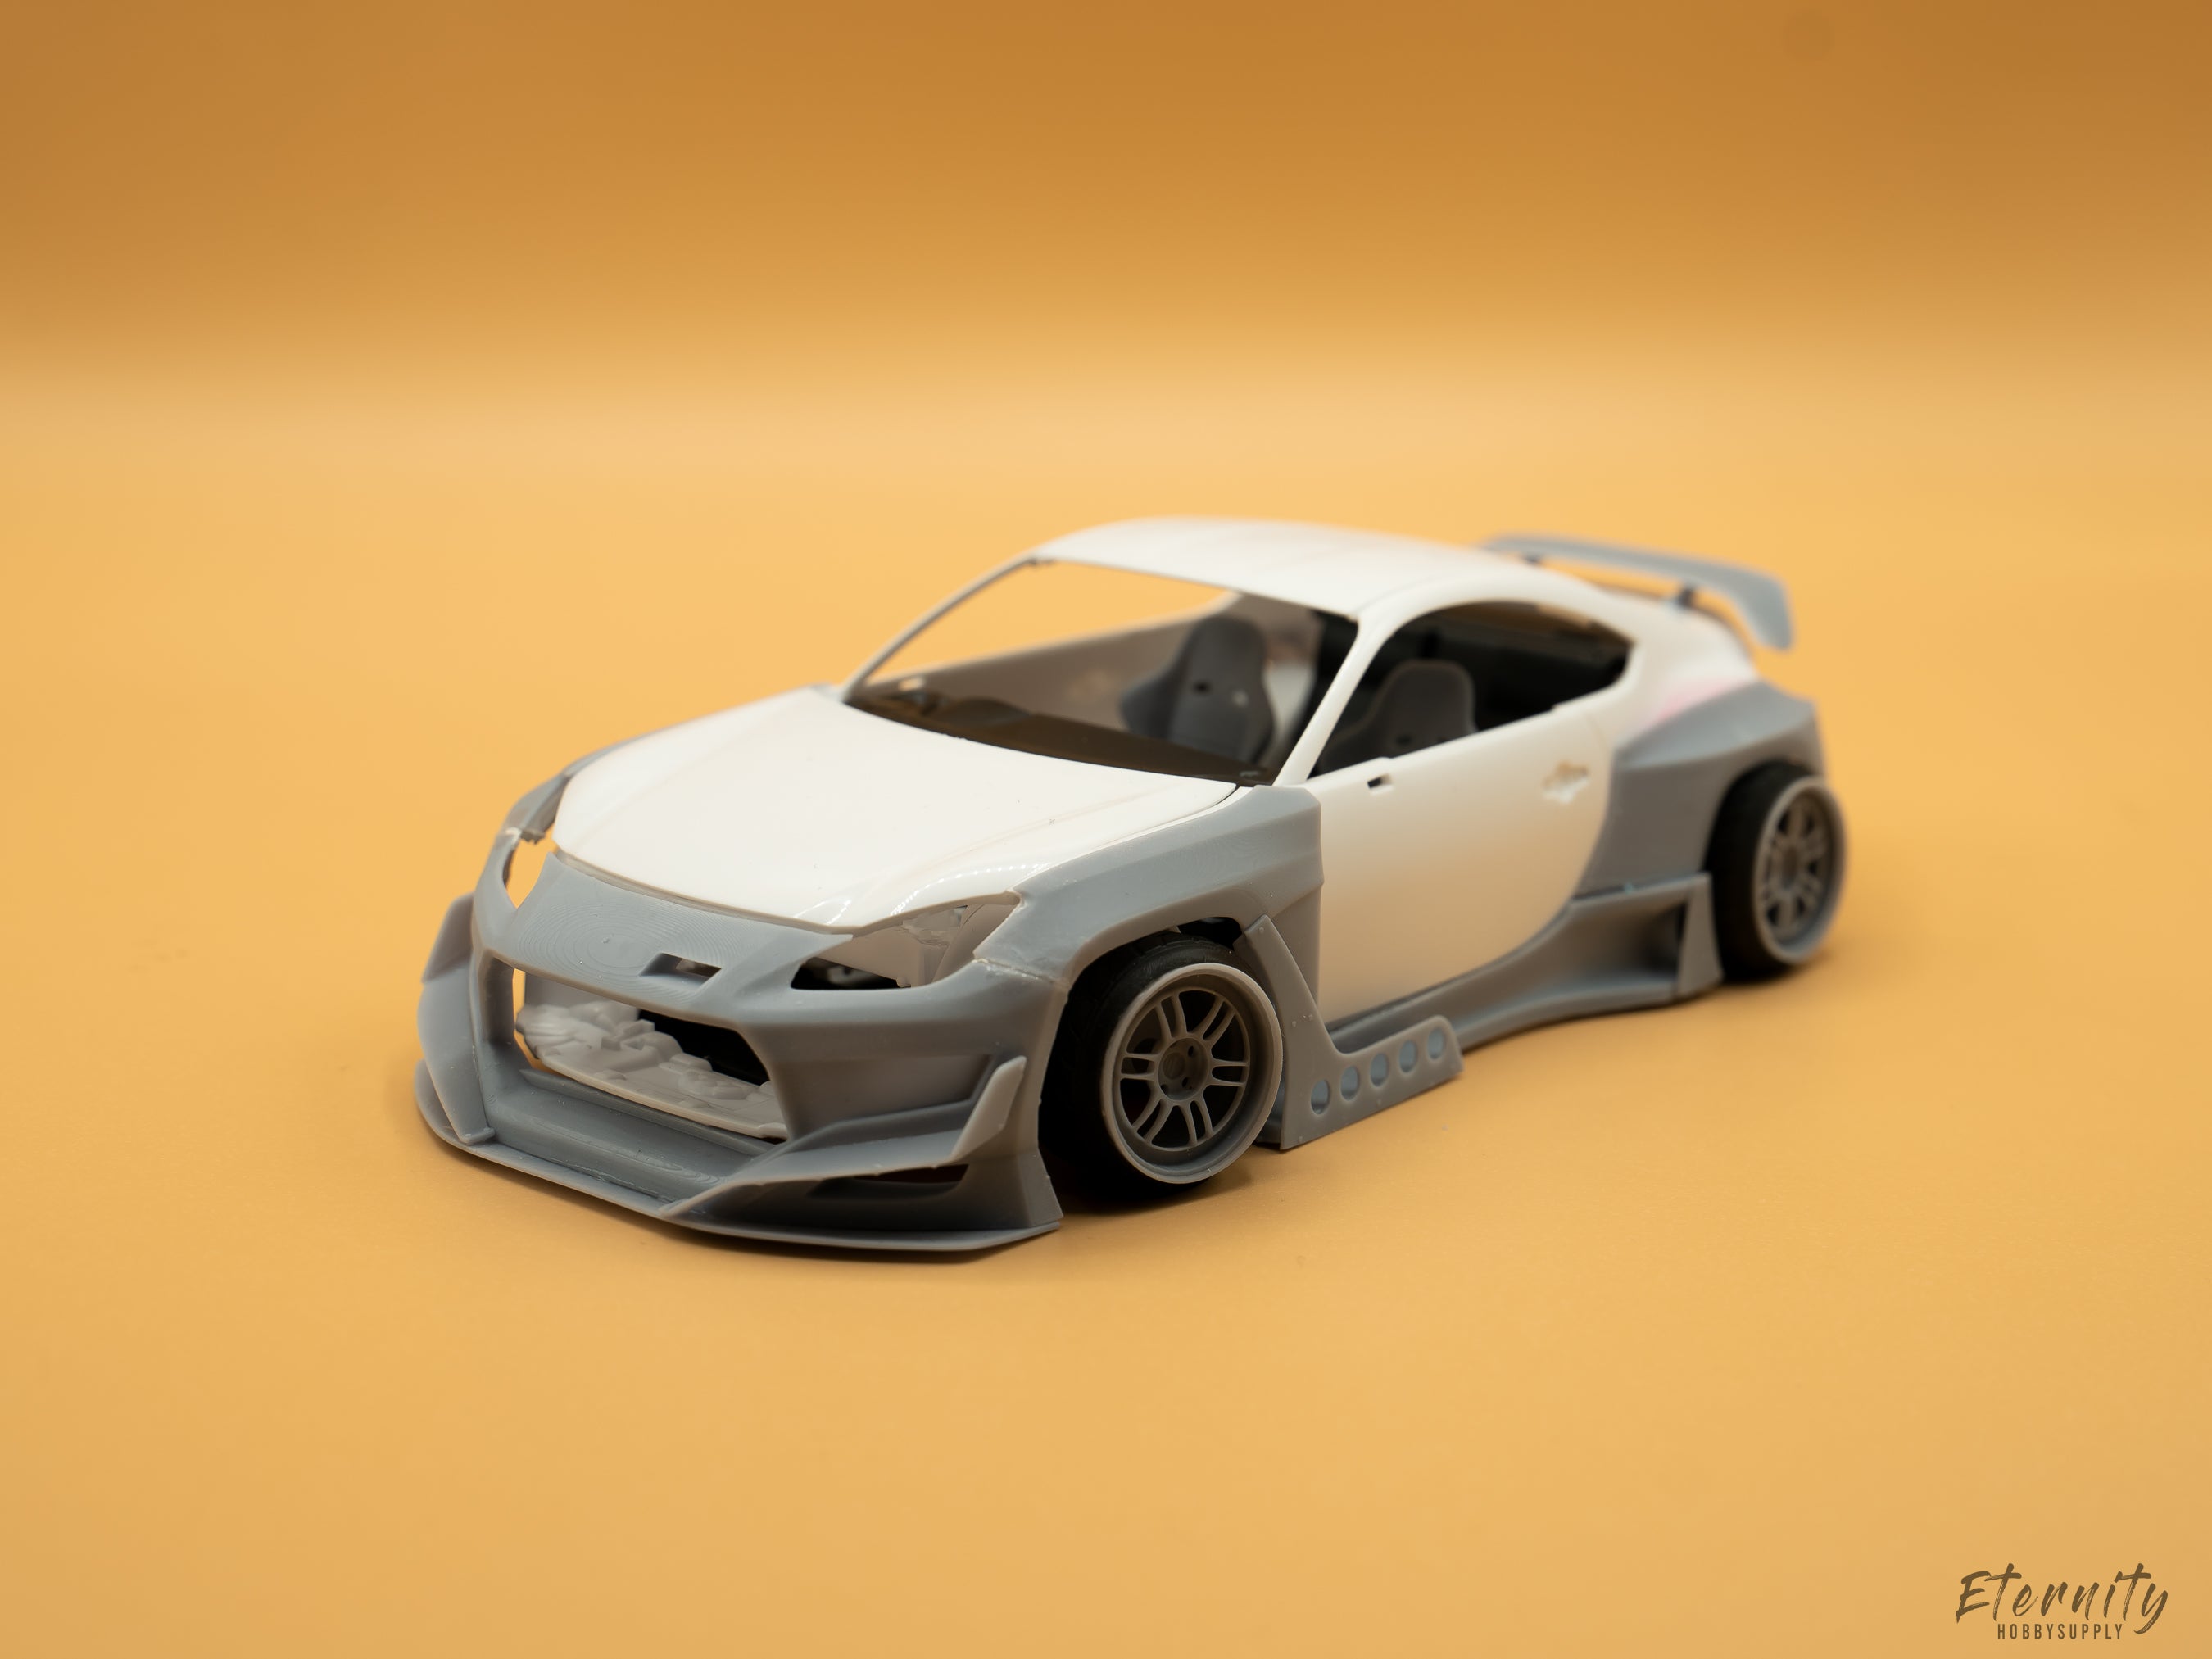 1/24 Tamiya Nissan R33 GTR ABFLUG Body Kit 3D PRINT 24145 